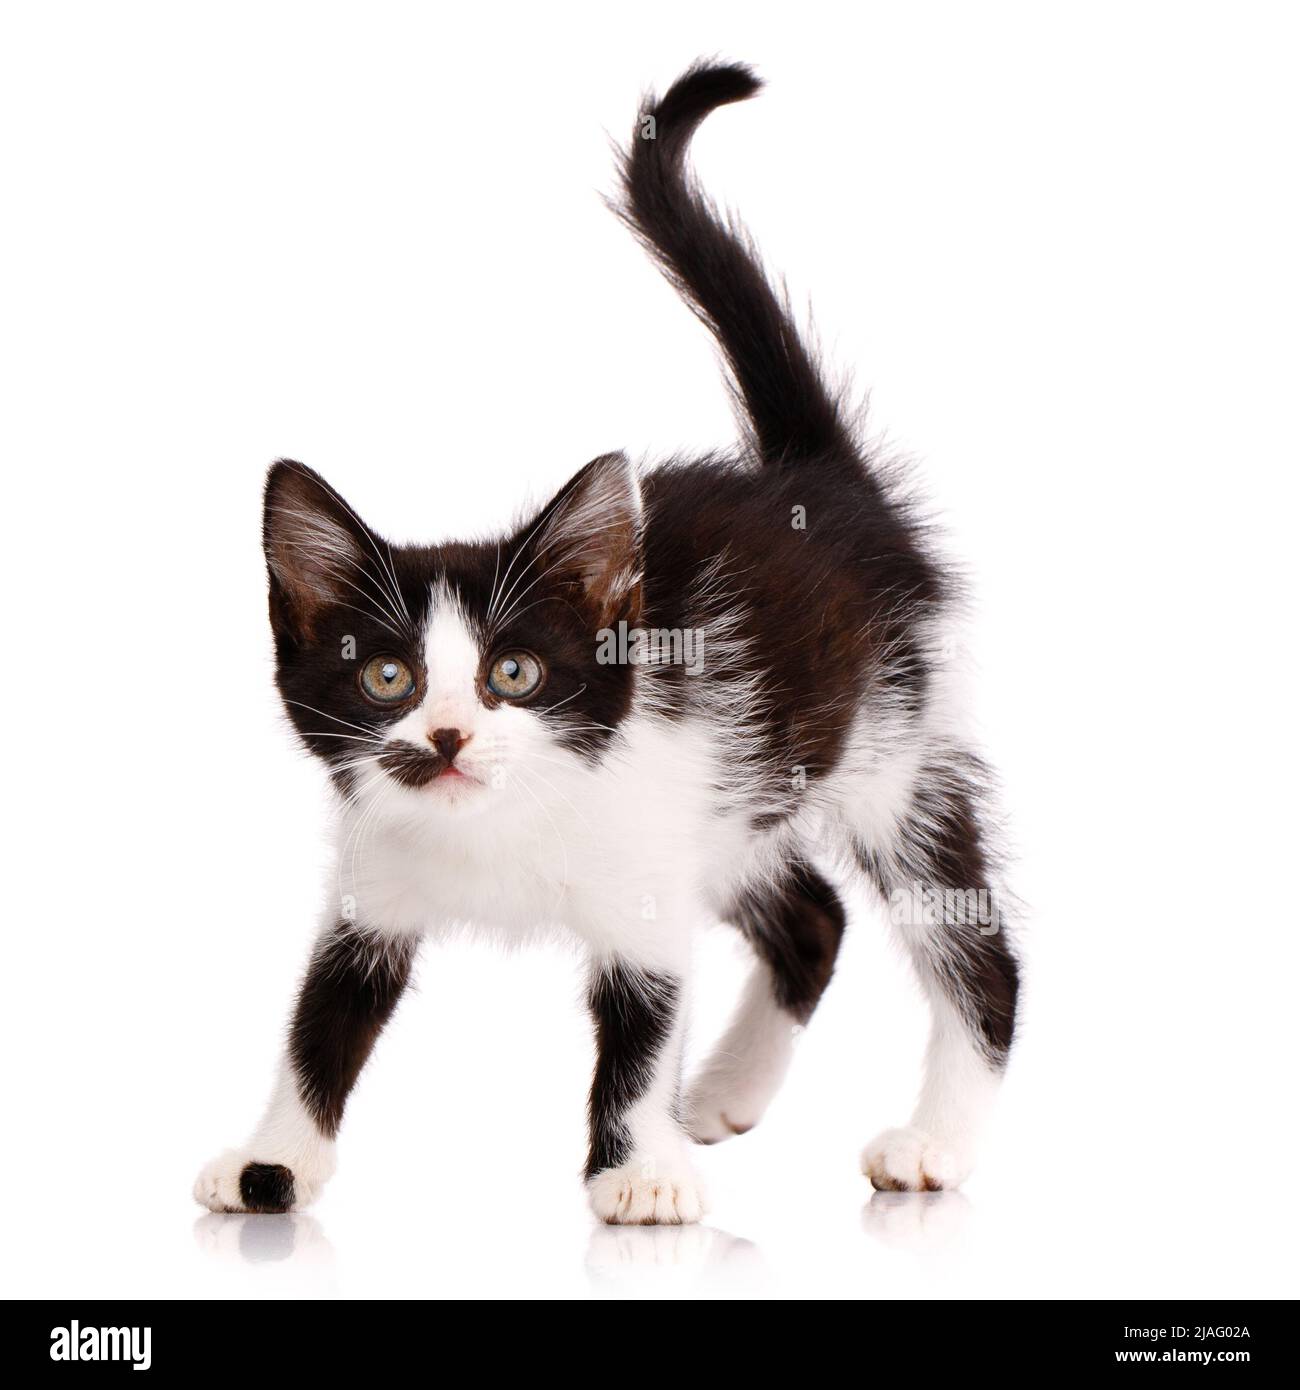 Porträt eines verspielten fokussierten schwarz-weißen Kätzchens, das angreifen will. Kleines einheimisches Raubtier mit einem Fleck im Gesicht und einem erhöhten Schwanz. Isoliert Stockfoto